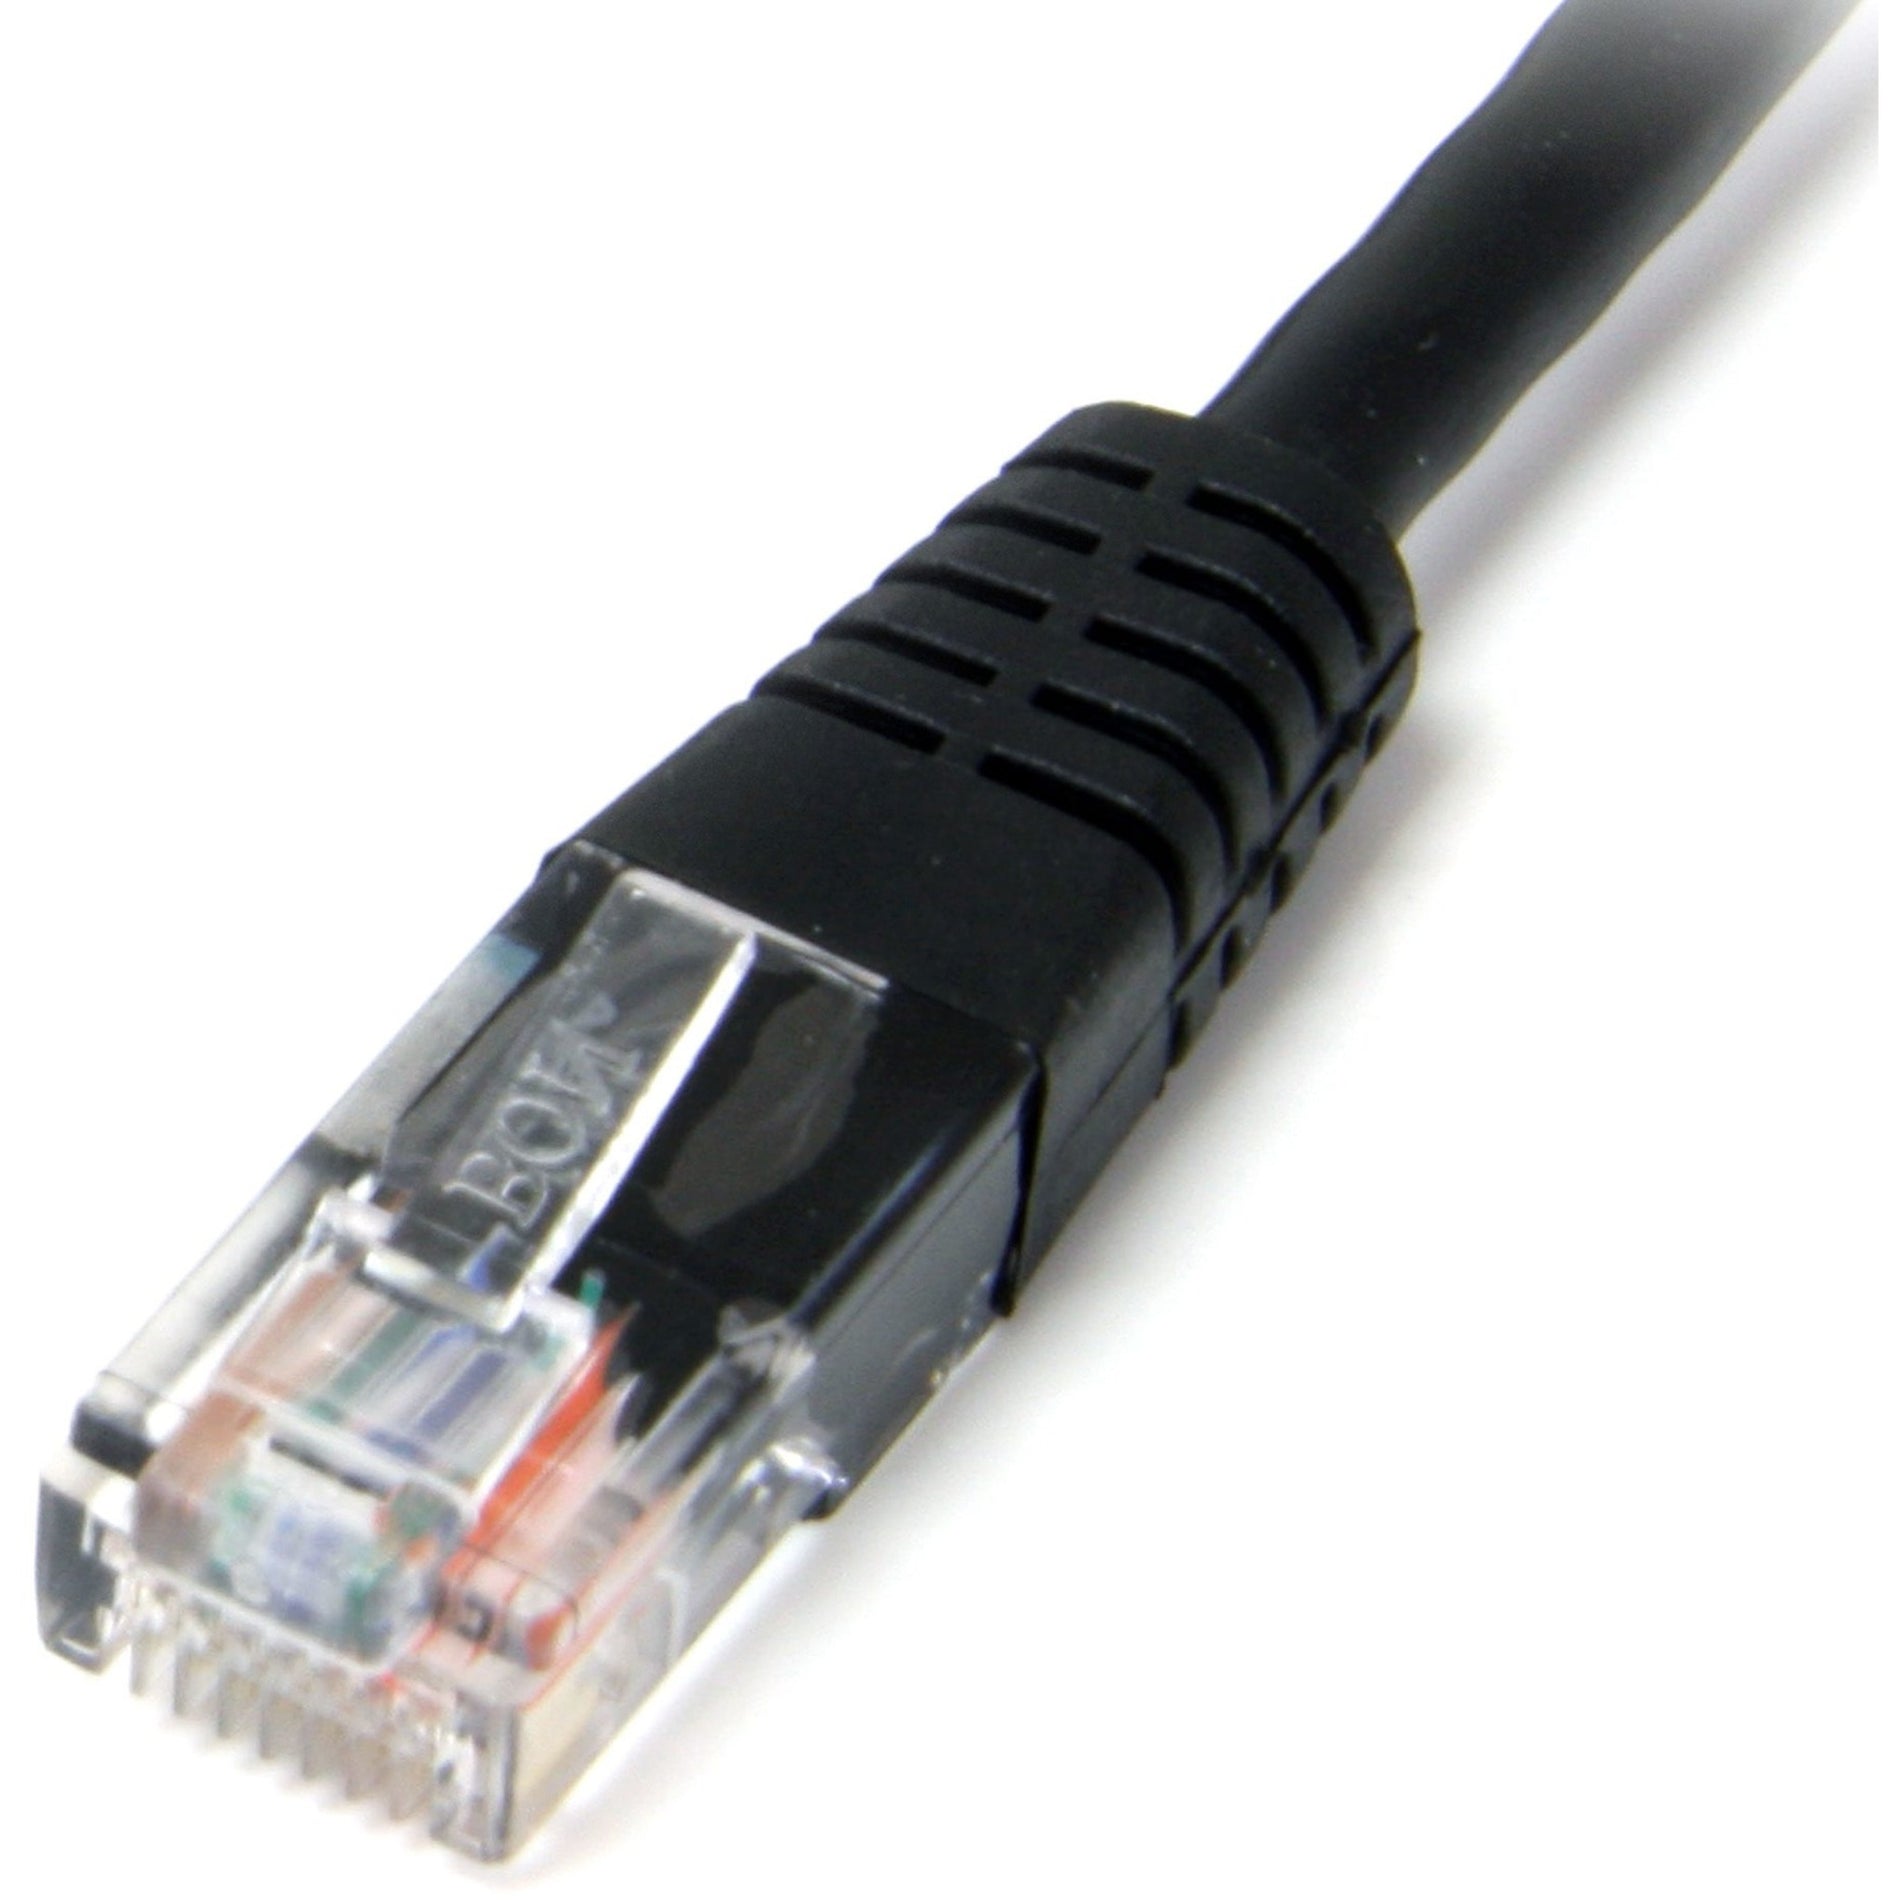 StarTech.com M45PATCH3BK Cat. 5E UTP Patch Cable, 3 ft Black Molded, Lifetime Warranty